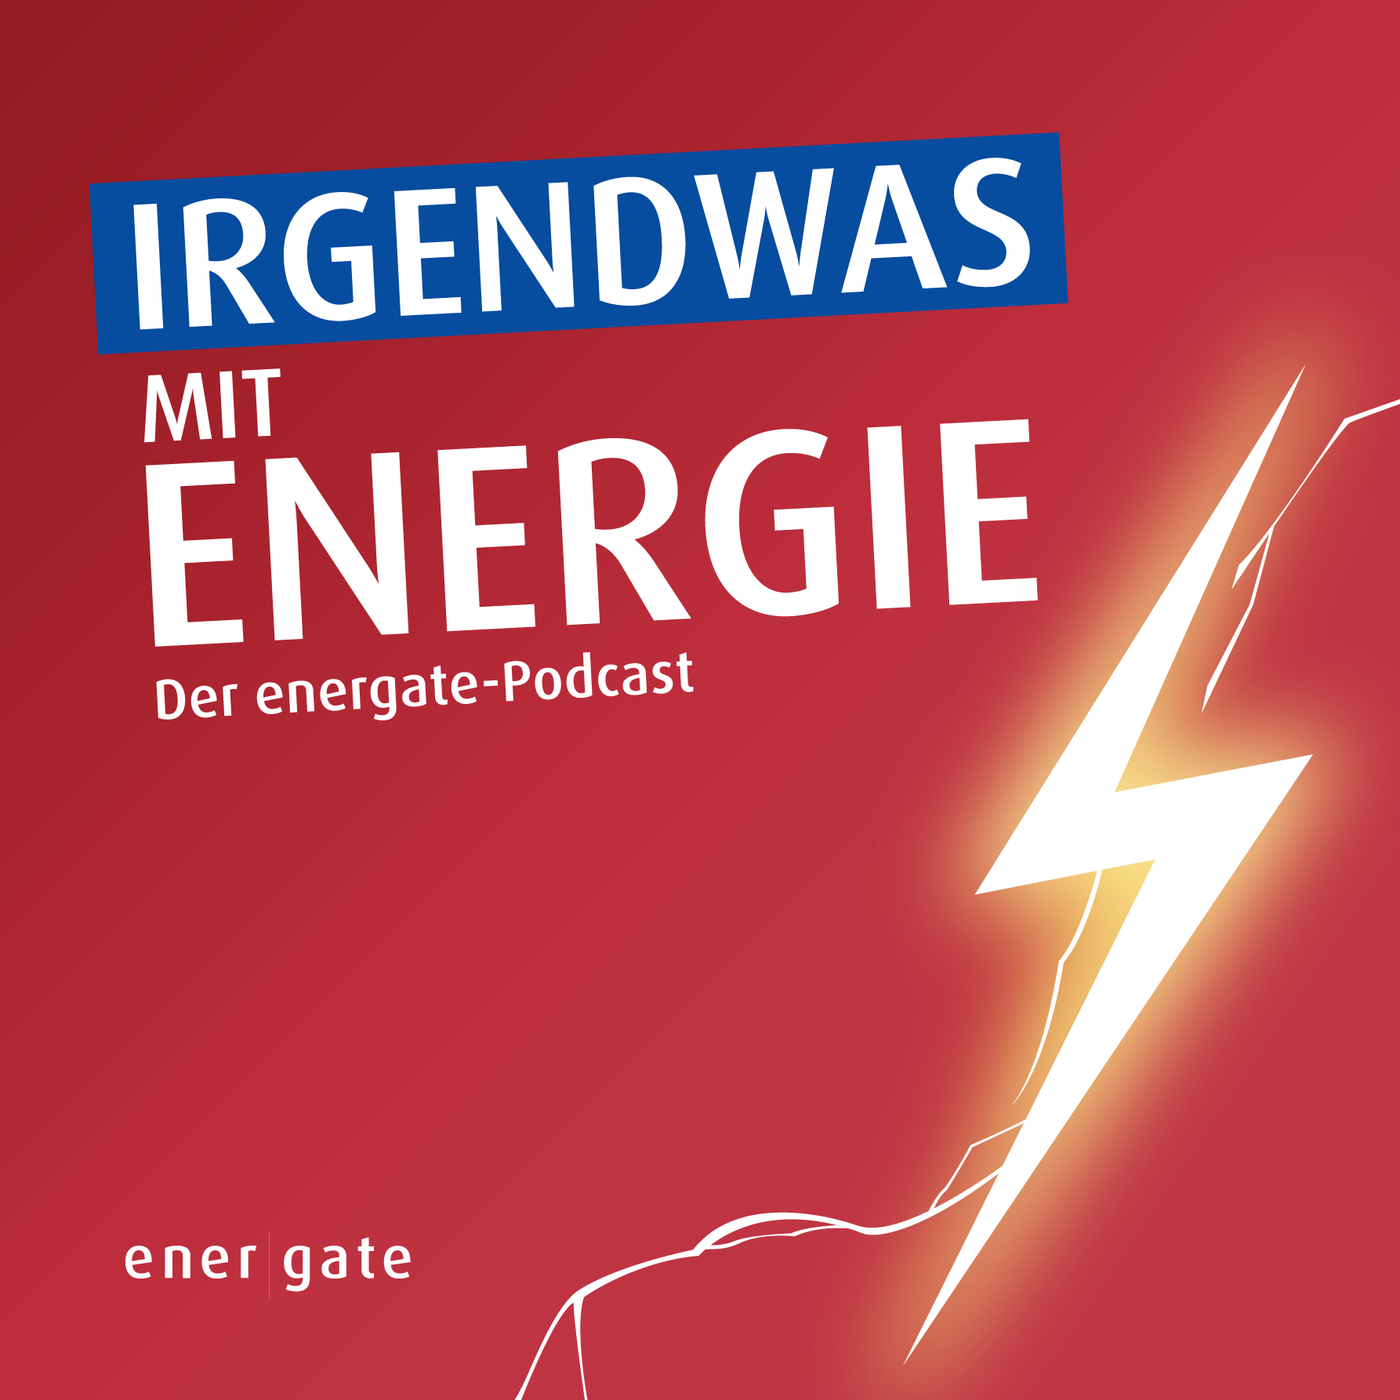 News-Update vom 26. Mai 2023 - Energieklassentreffen in Essen und Heizstreiterei in Berlin